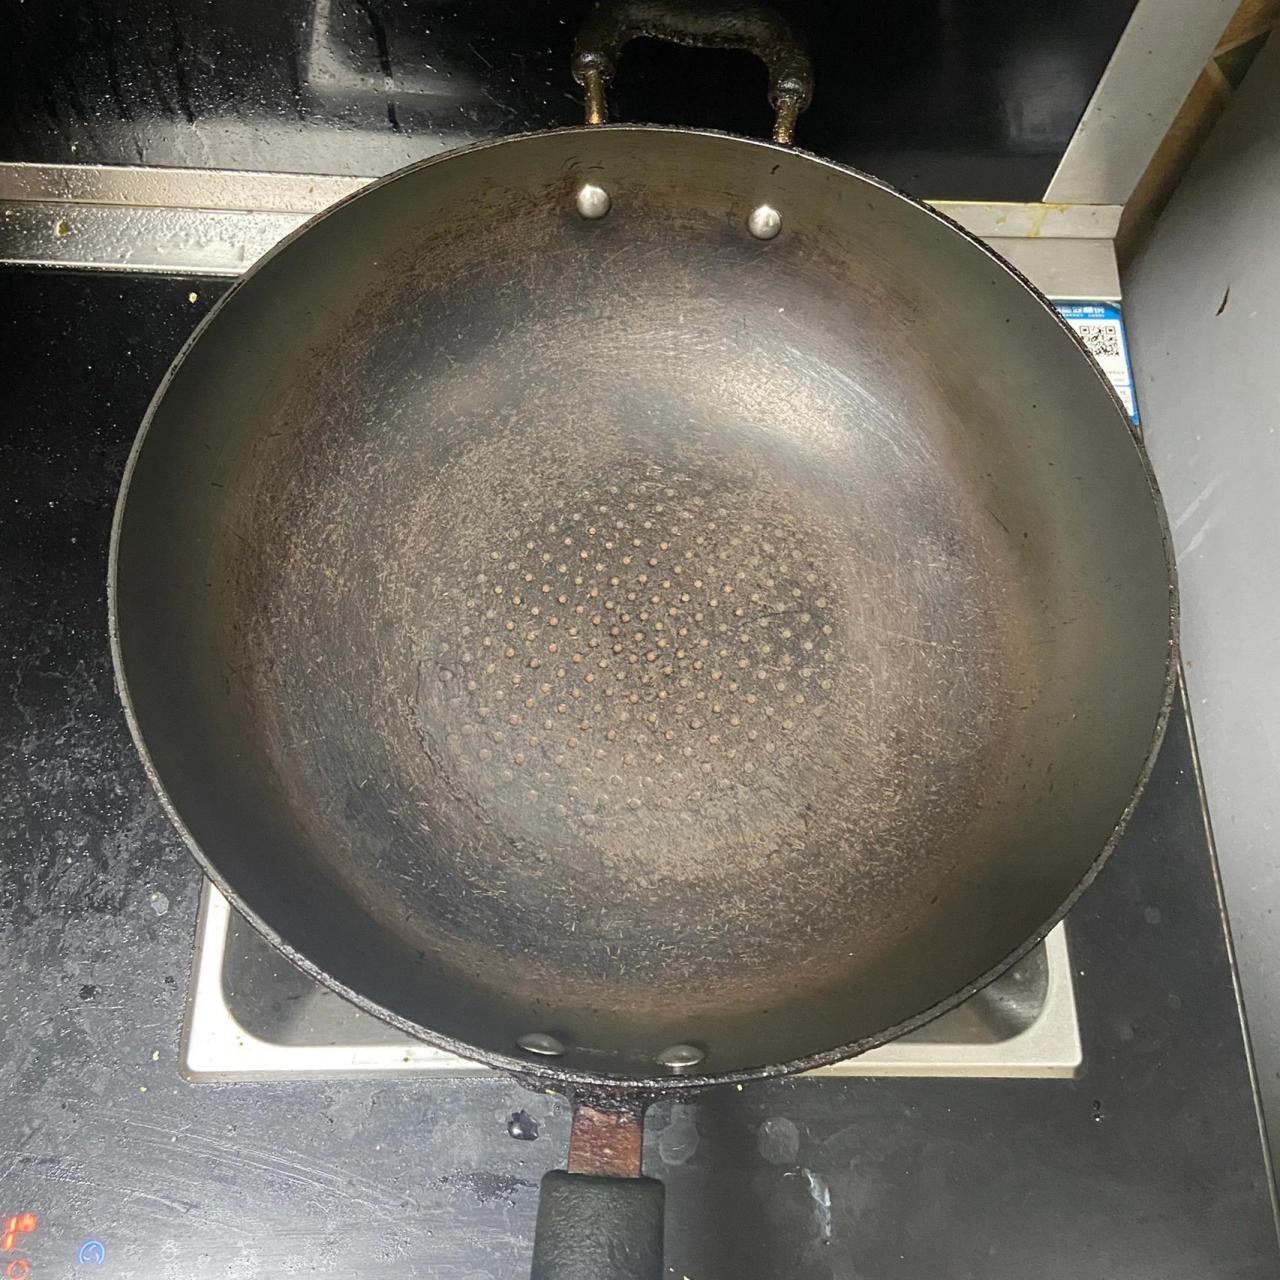 不粘锅涂层掉了,还能用吗 自从涂层脱落以后,巨粘 刷锅都是用的铁刷子